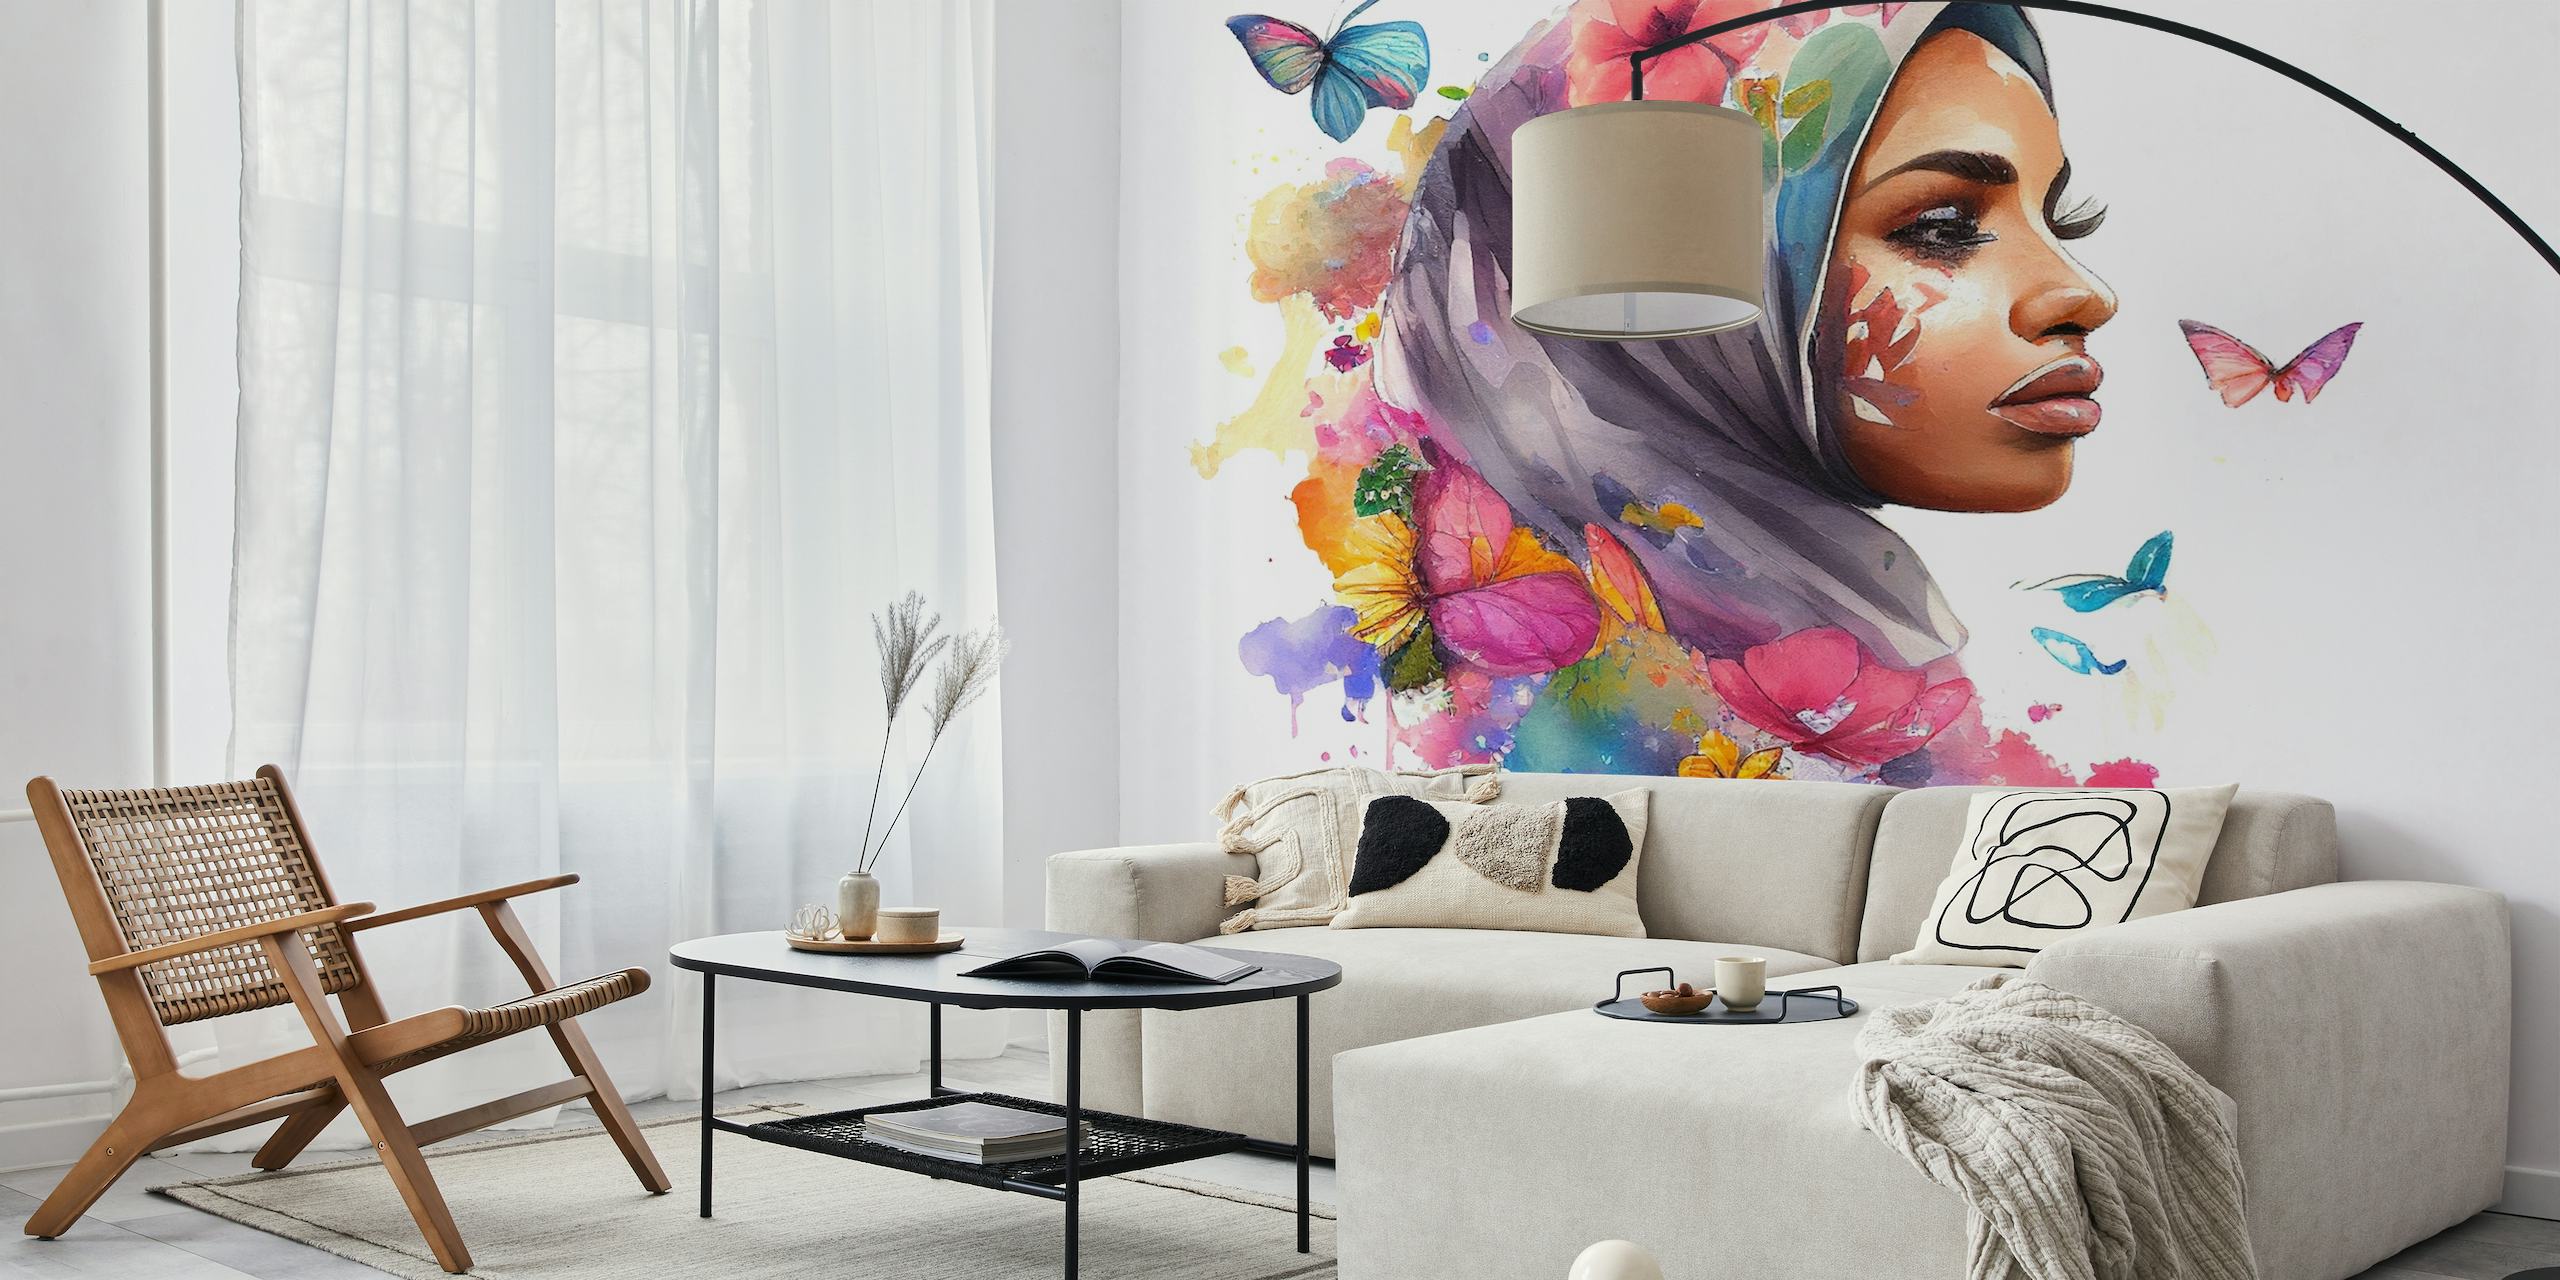 Pintura acuarela de una mujer con un hijab floral con mariposas